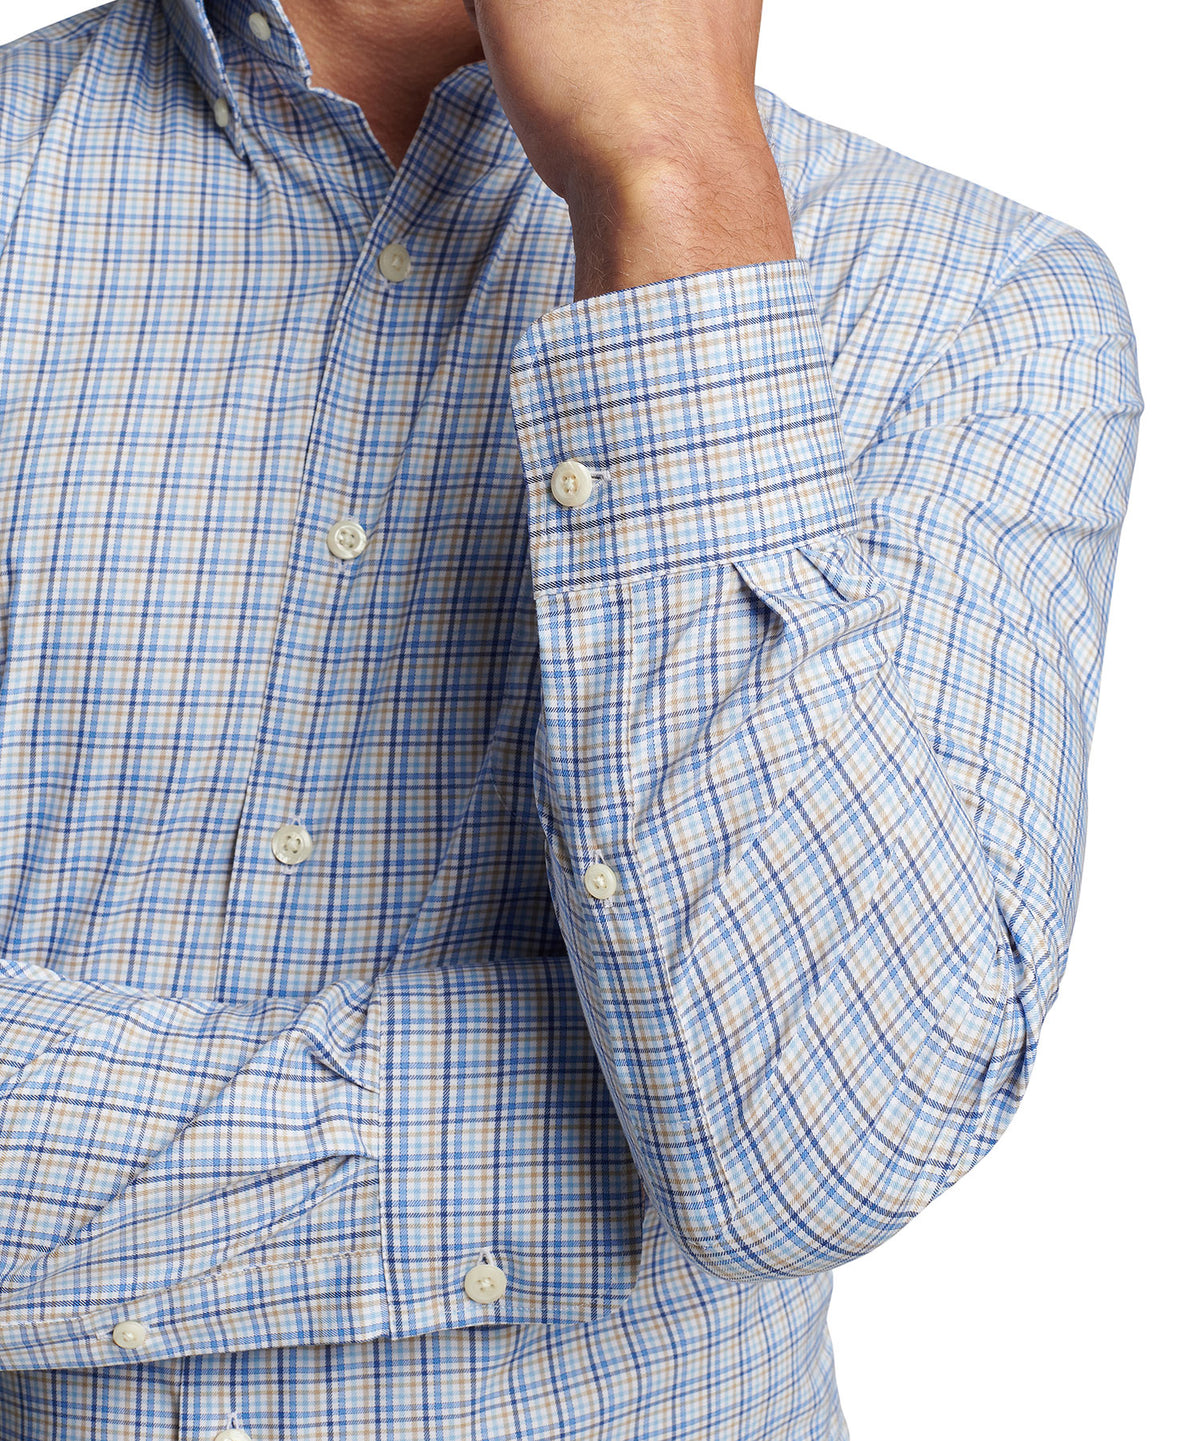 Peter Millar Long Sleeve Cutler Button-Down Collar Patterned Sport Shirt, Men's Big & Tall